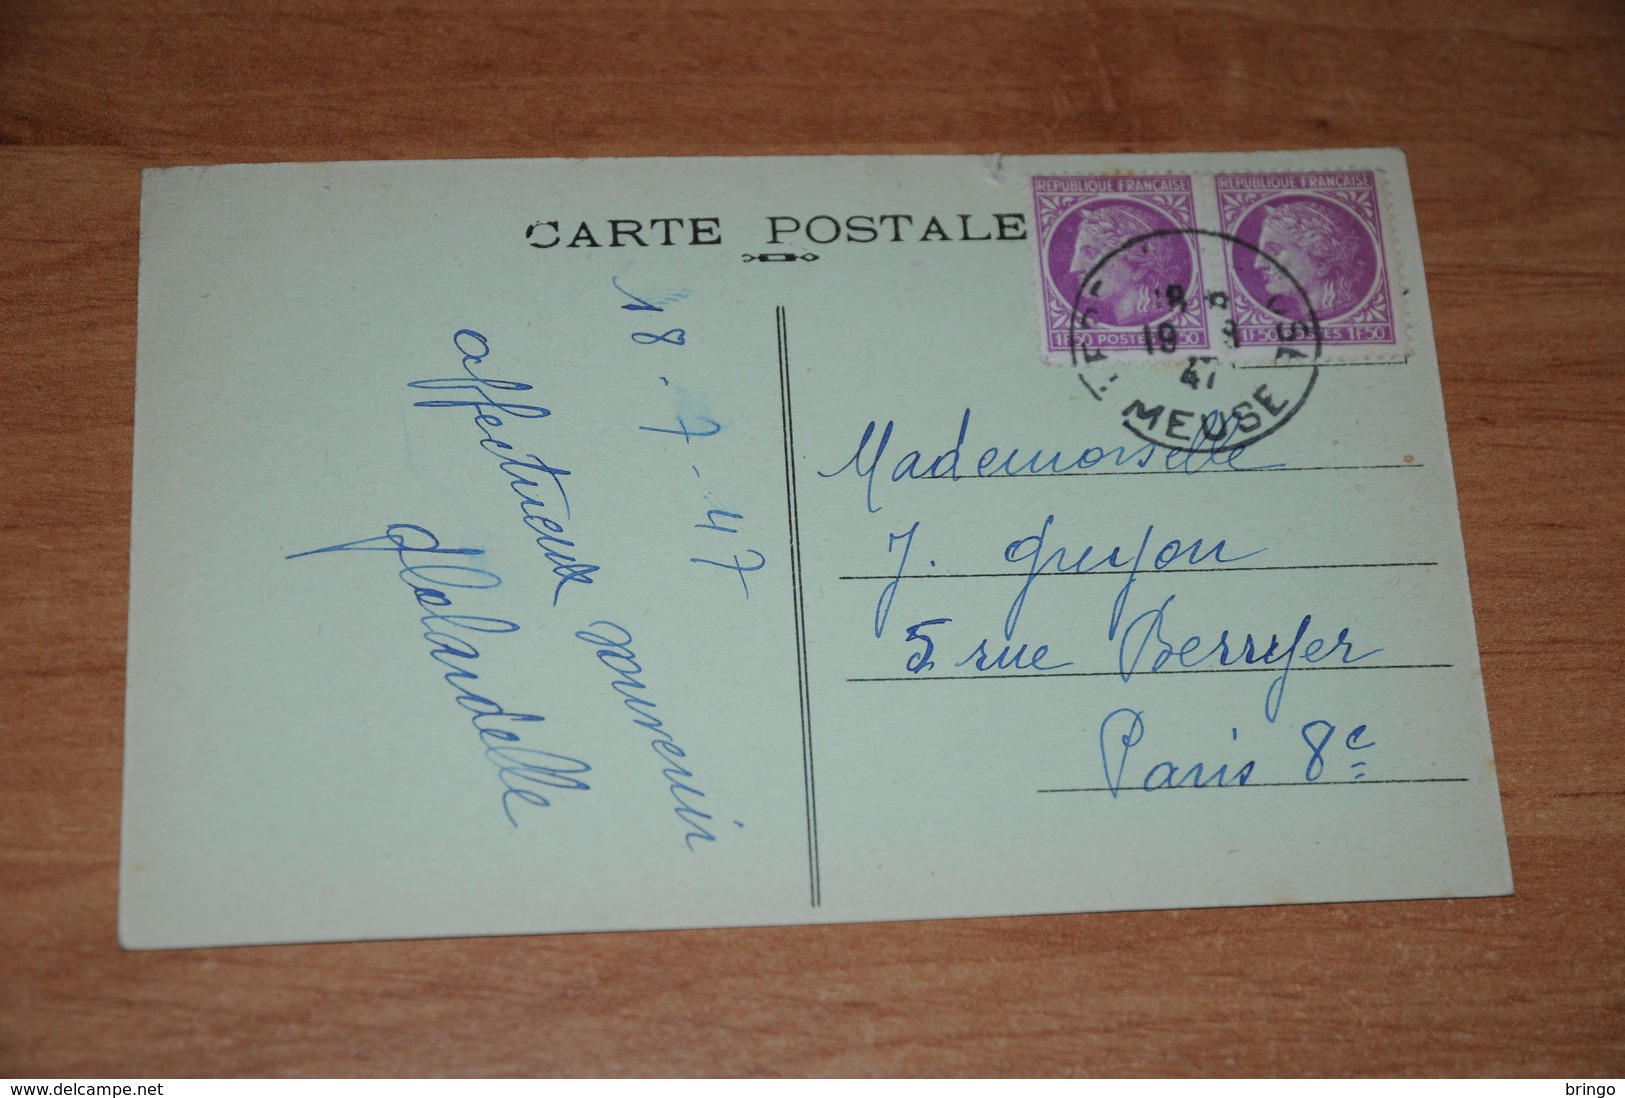 2266-          VERDUN, L'HOTEL DE VILLE - 1947 - Verdun